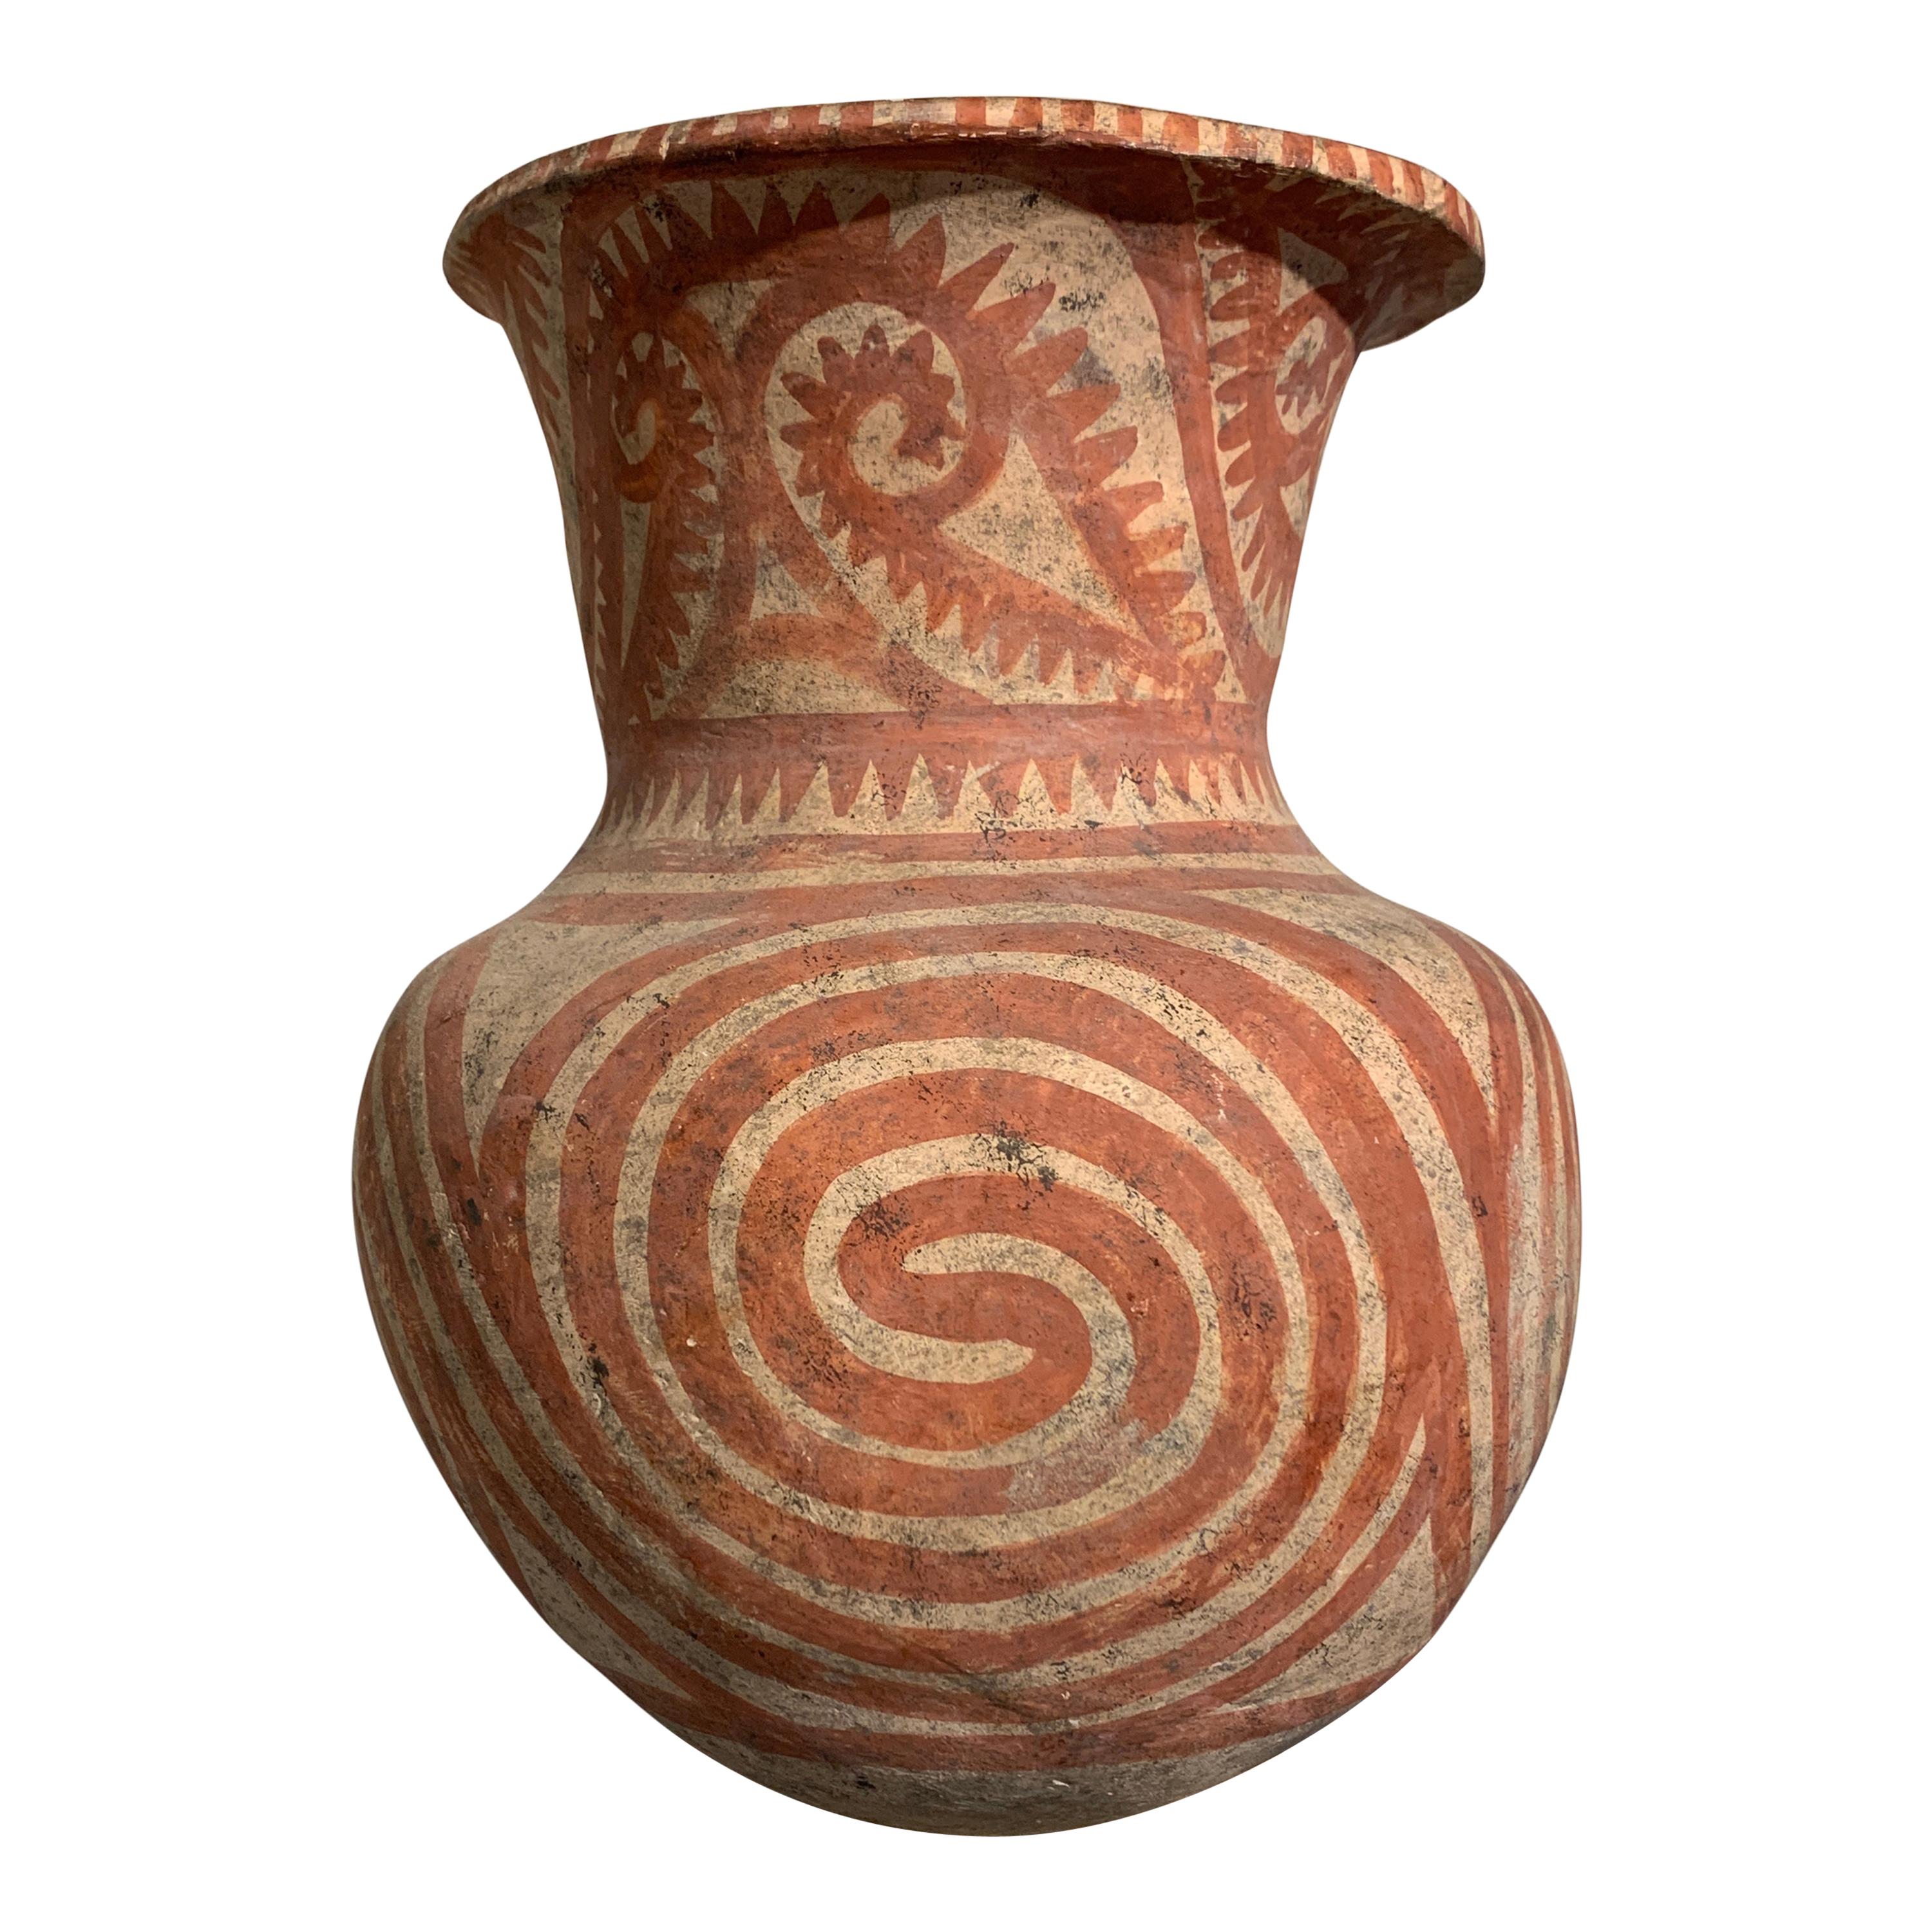 Grand vase en poterie thaïlandaise peinte Ban Chiang, fin de la période, vers 300 avant J.-C.